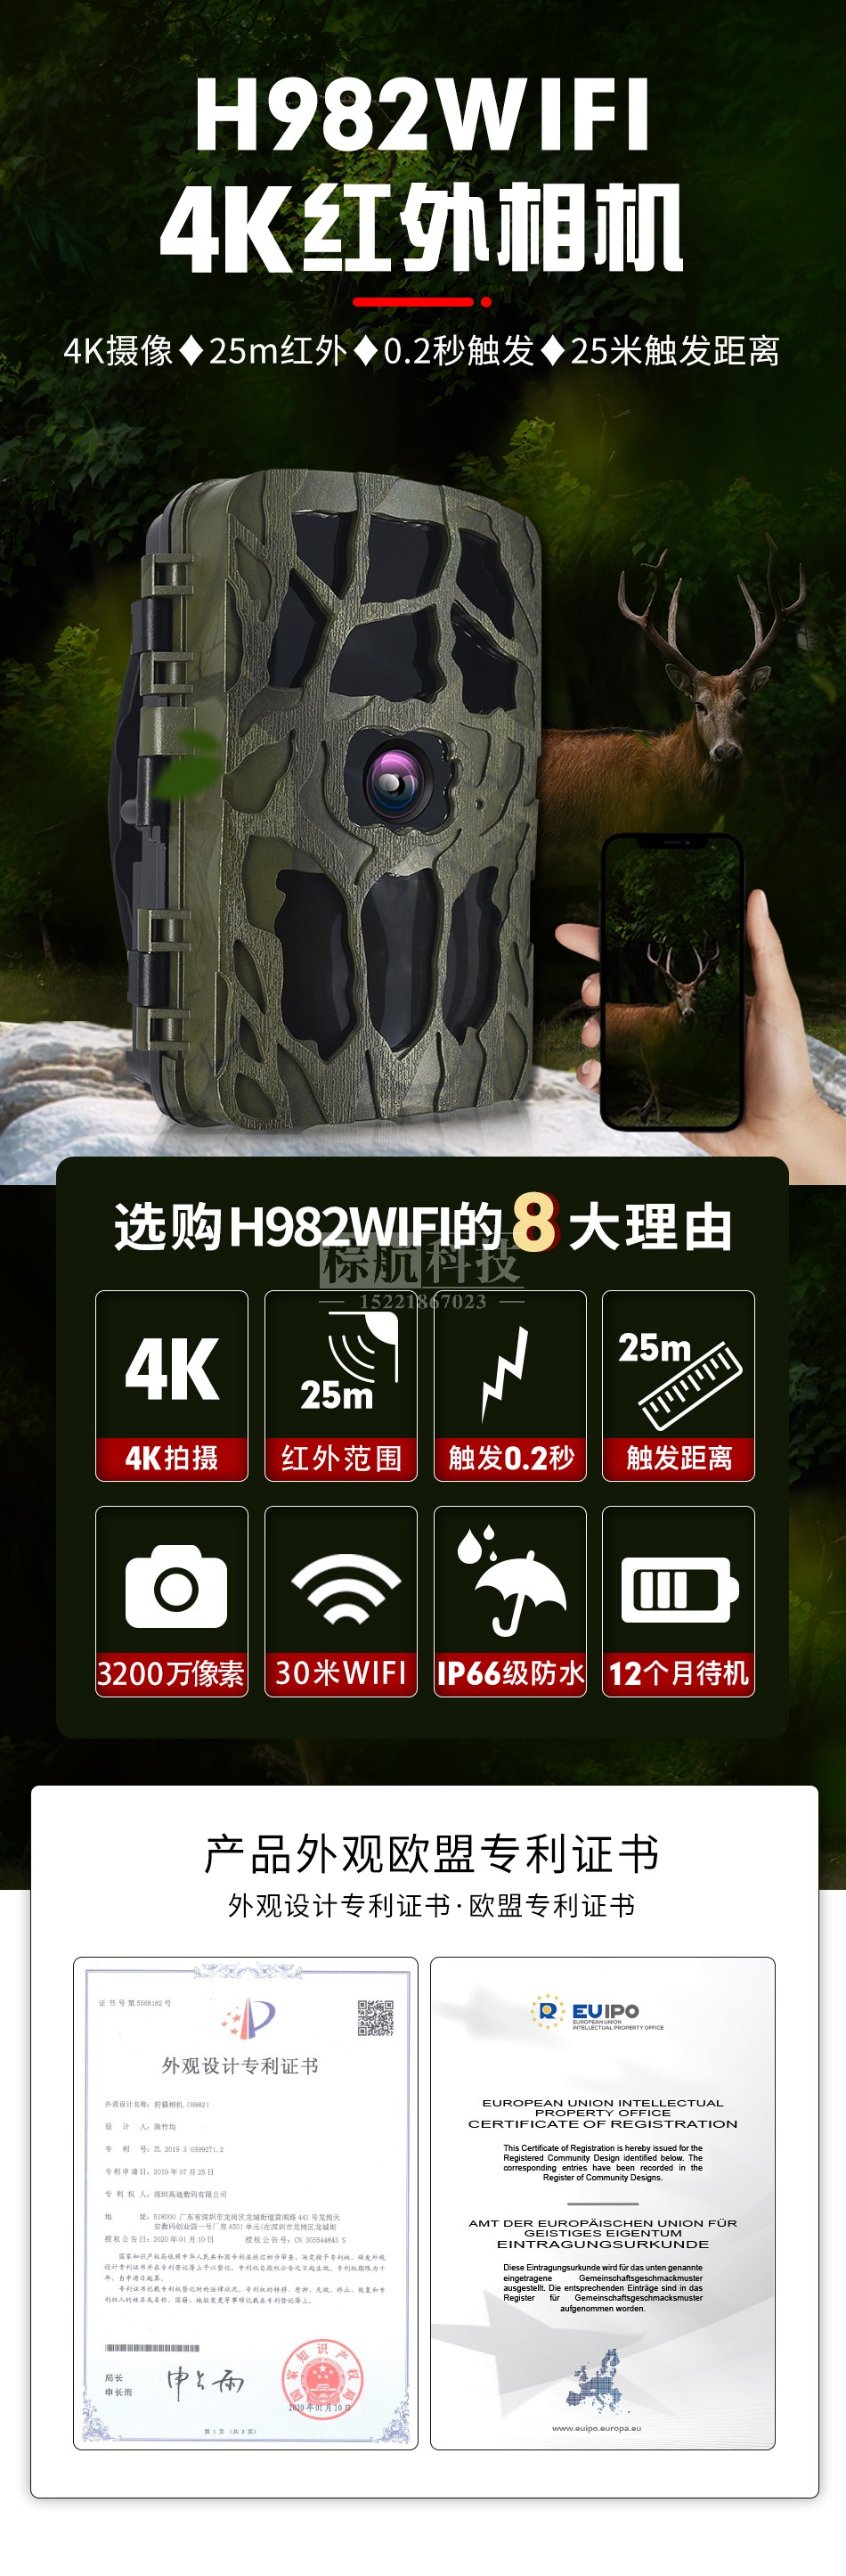 H982红外相机 产品及功能介绍.jpg